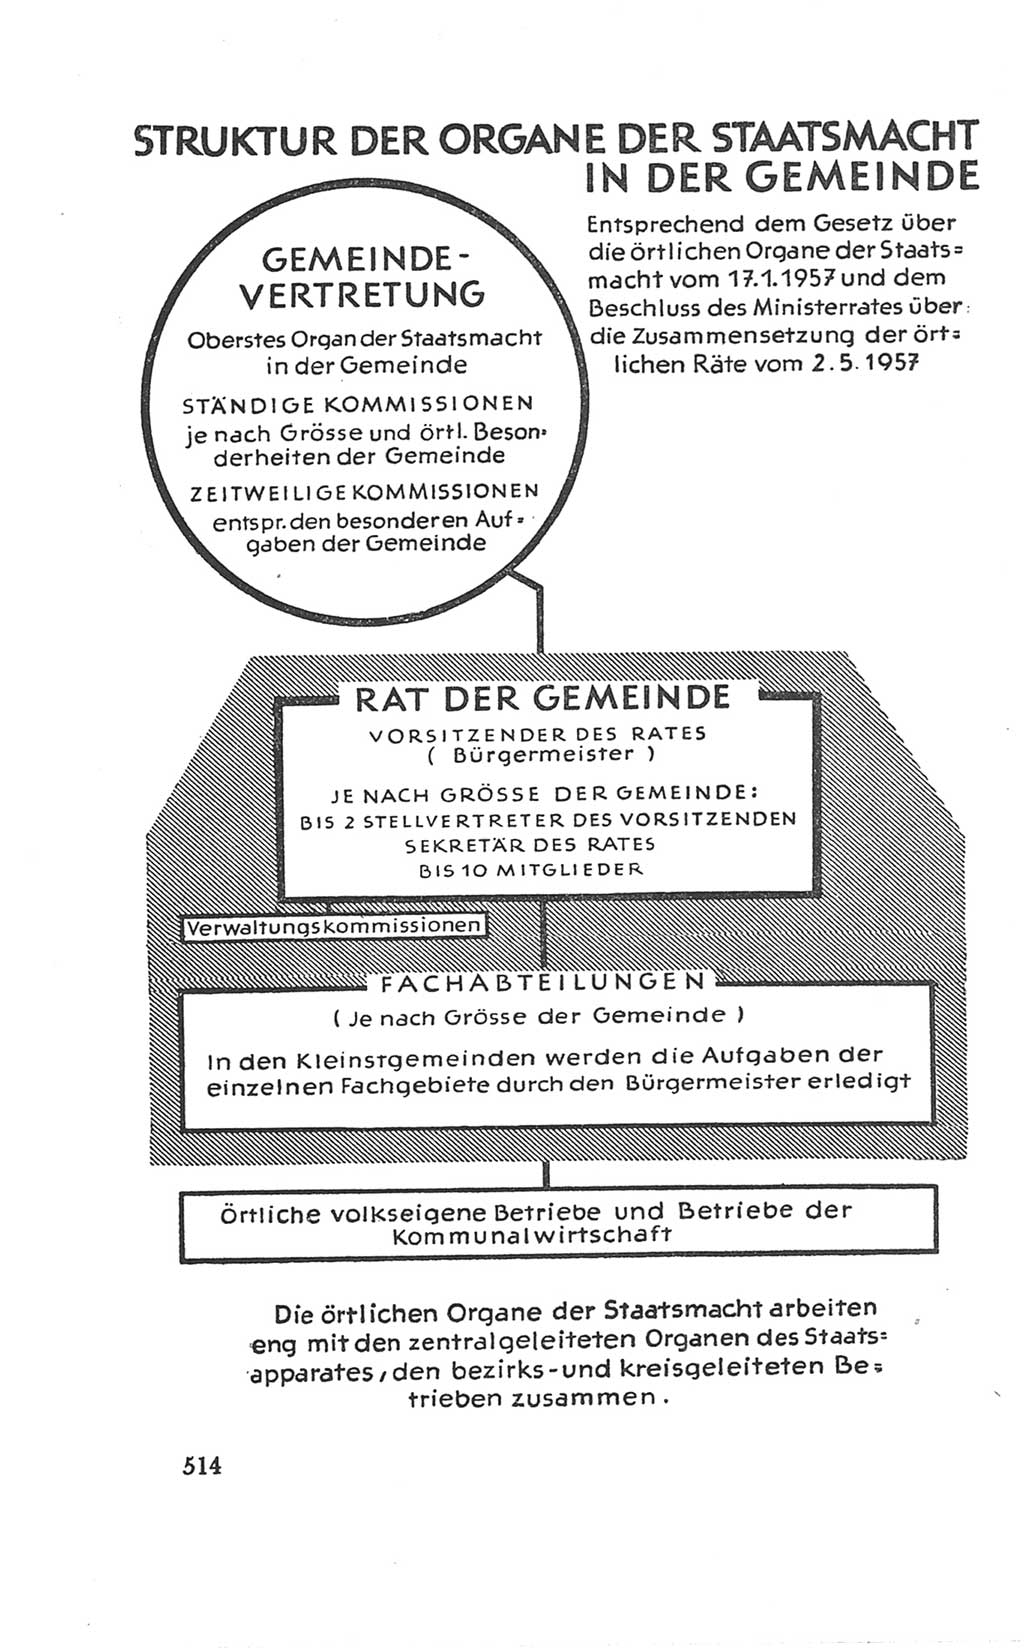 Handbuch der Volkskammer (VK) der Deutschen Demokratischen Republik (DDR), 3. Wahlperiode 1958-1963, Seite 514 (Hdb. VK. DDR 3. WP. 1958-1963, S. 514)